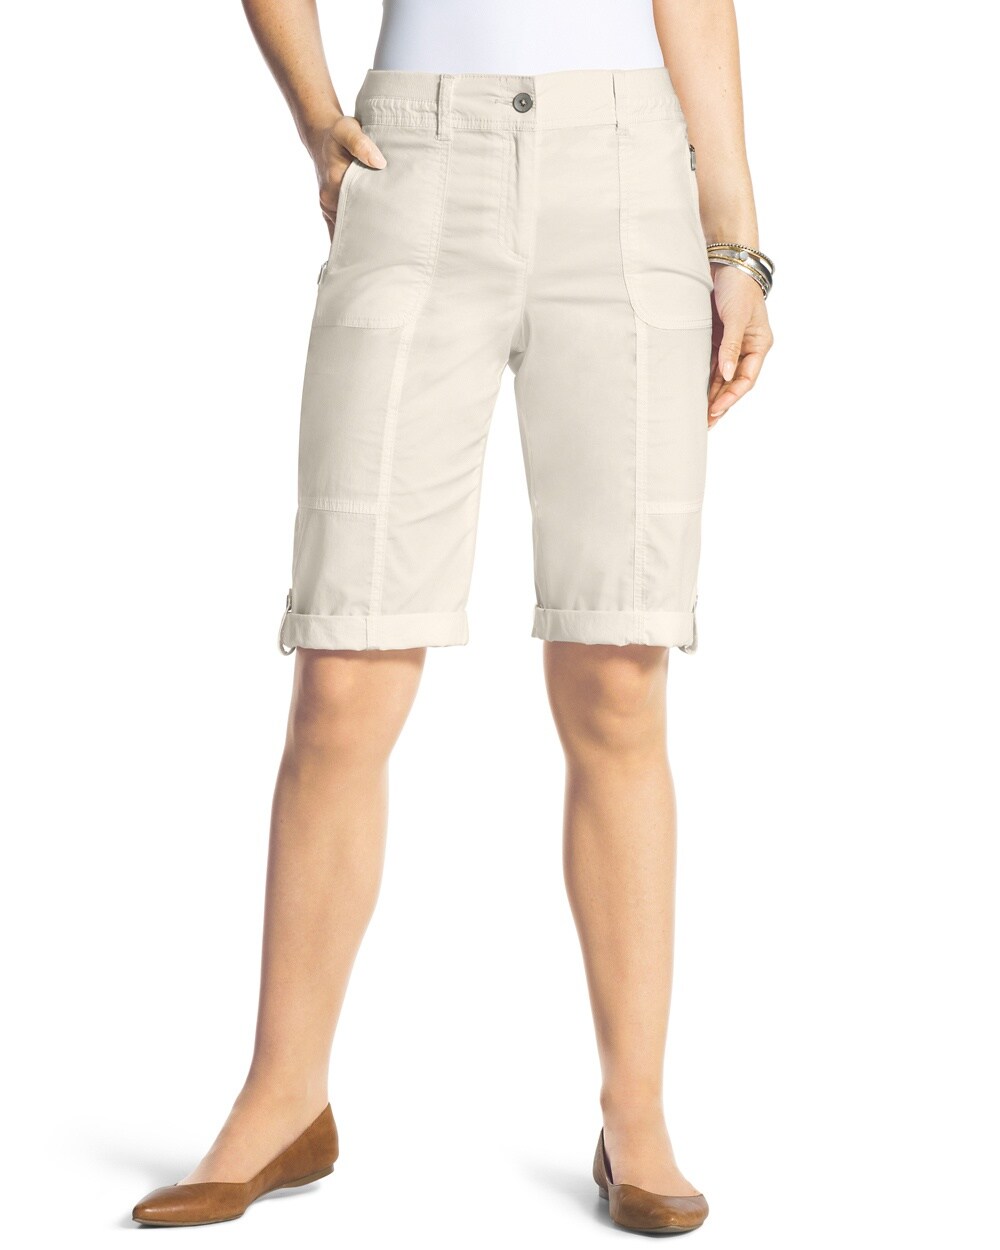 Casual Roll-Cuff Shorts - 13 Inch Inseam